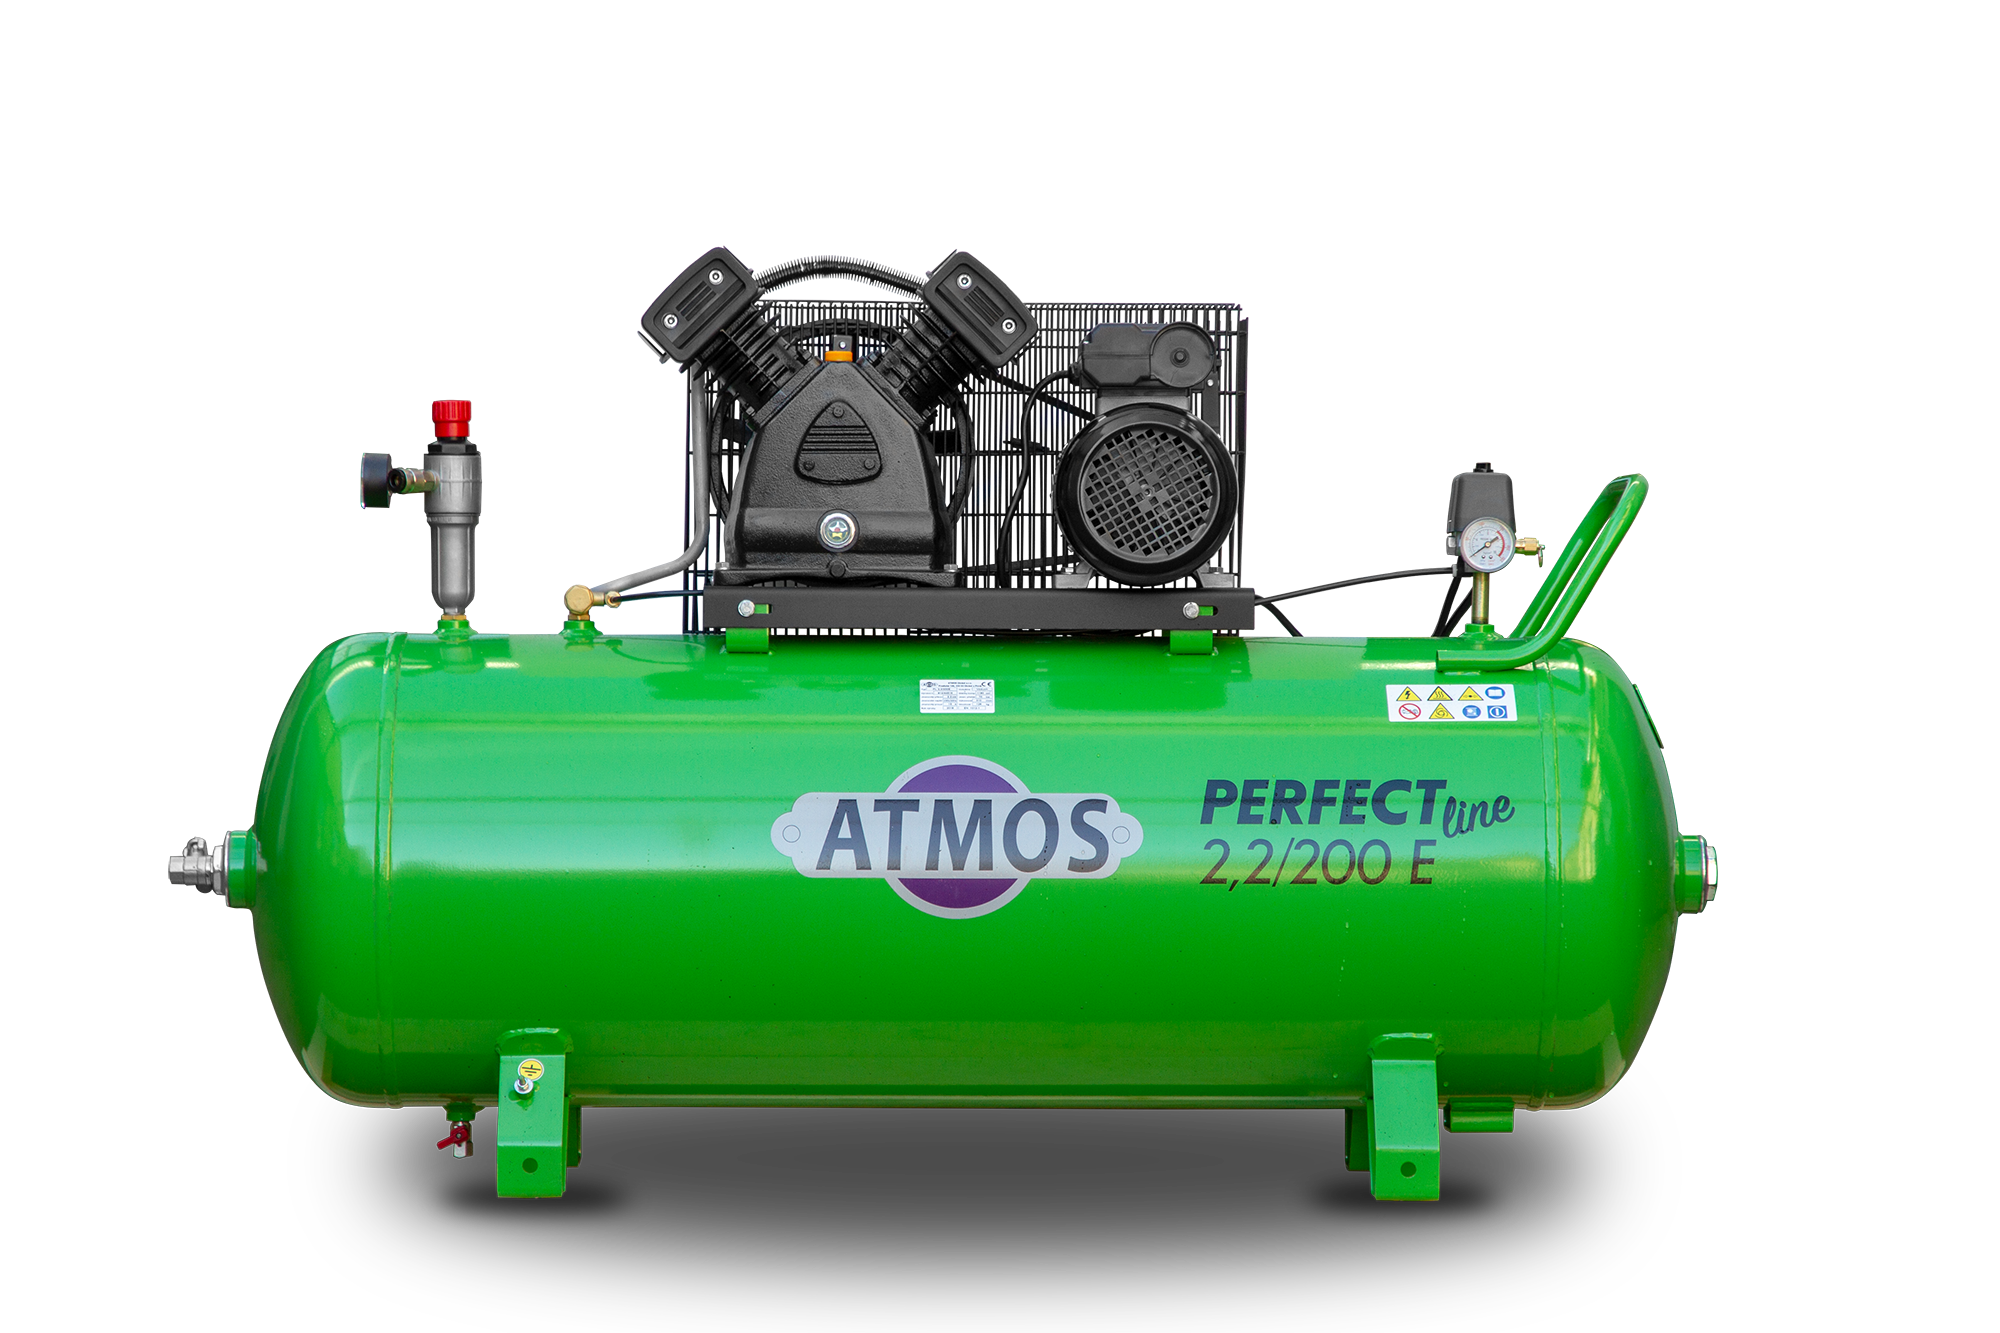 Pístový kompresor ATMOS Perfect Line PL 2,2/200 E